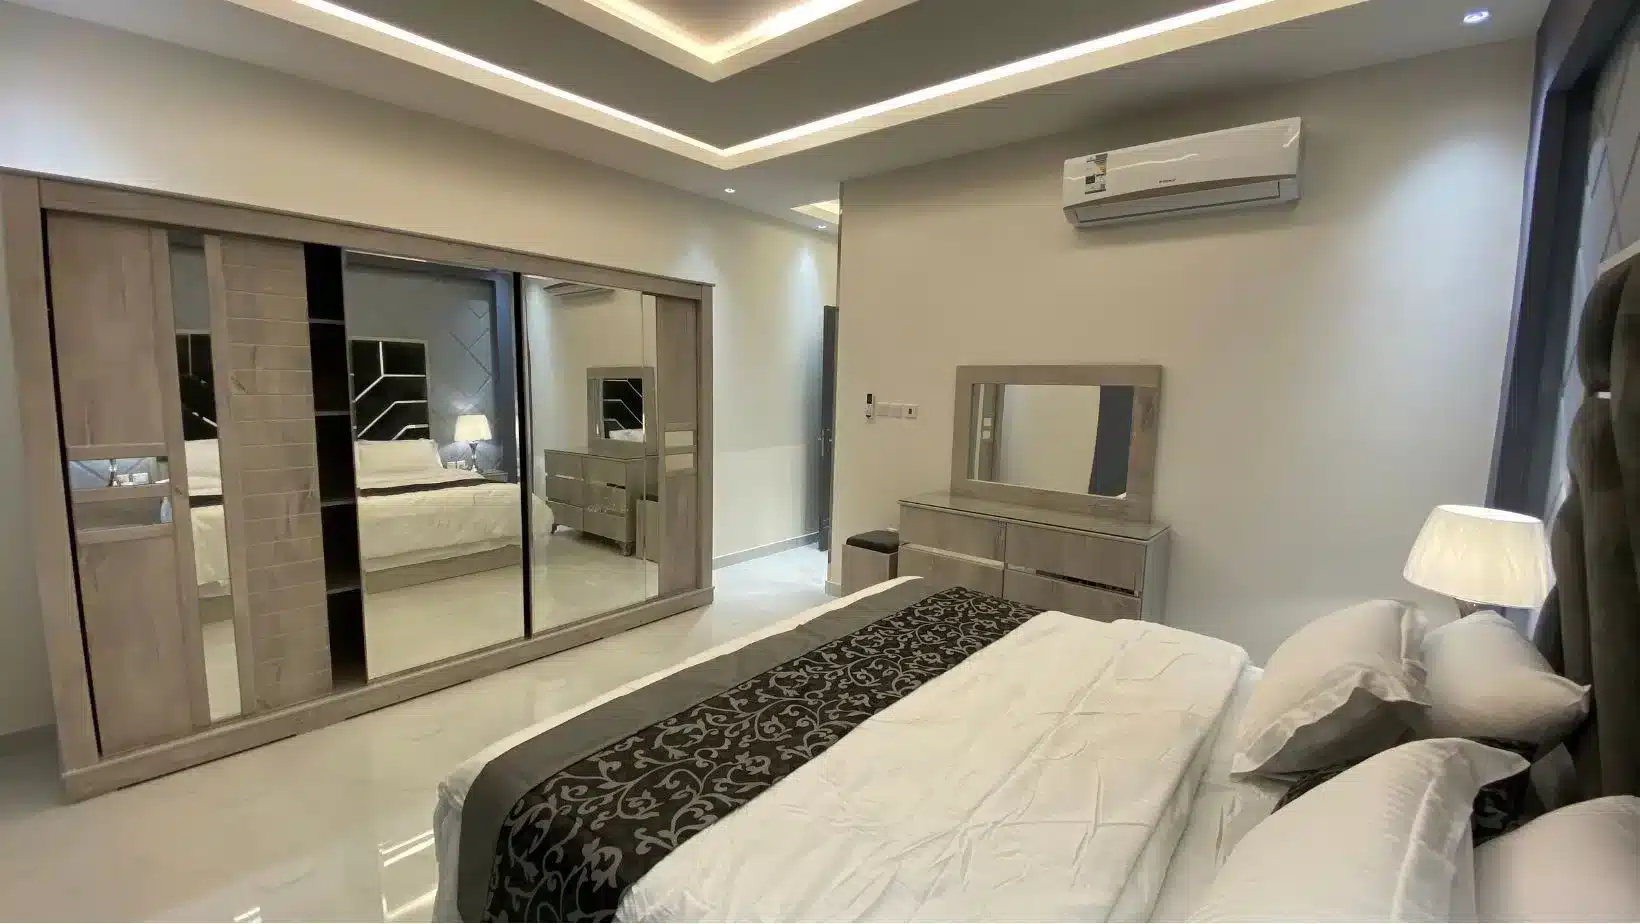 شقق مجمع سامسونج بالعليا الرياض، Samsung complex apartments in Olaya, Riyadh